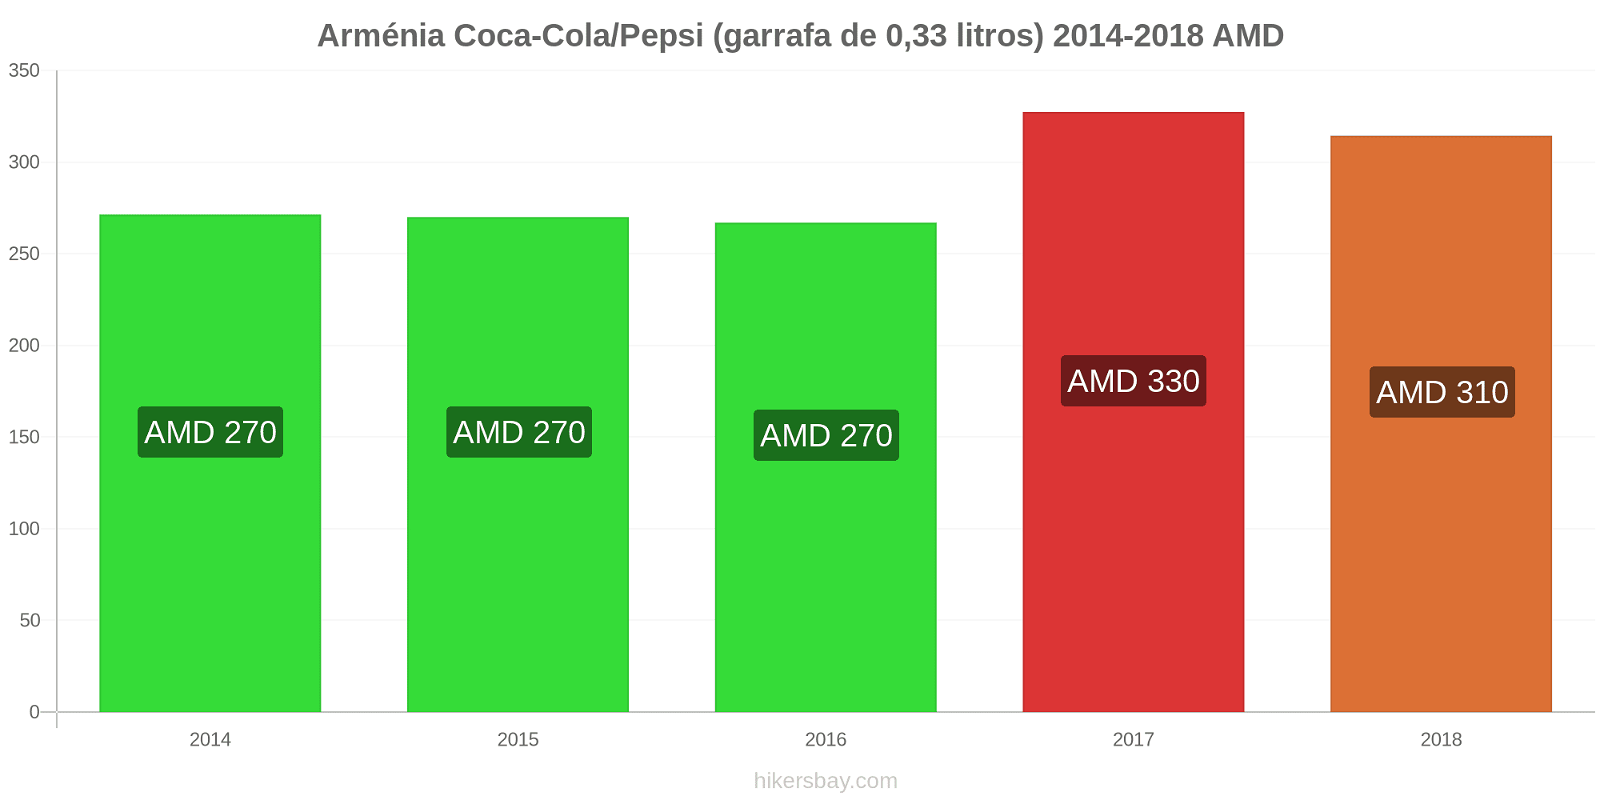 Arménia mudanças de preços Coca-Cola/Pepsi (garrafa de 0.33 litros) hikersbay.com